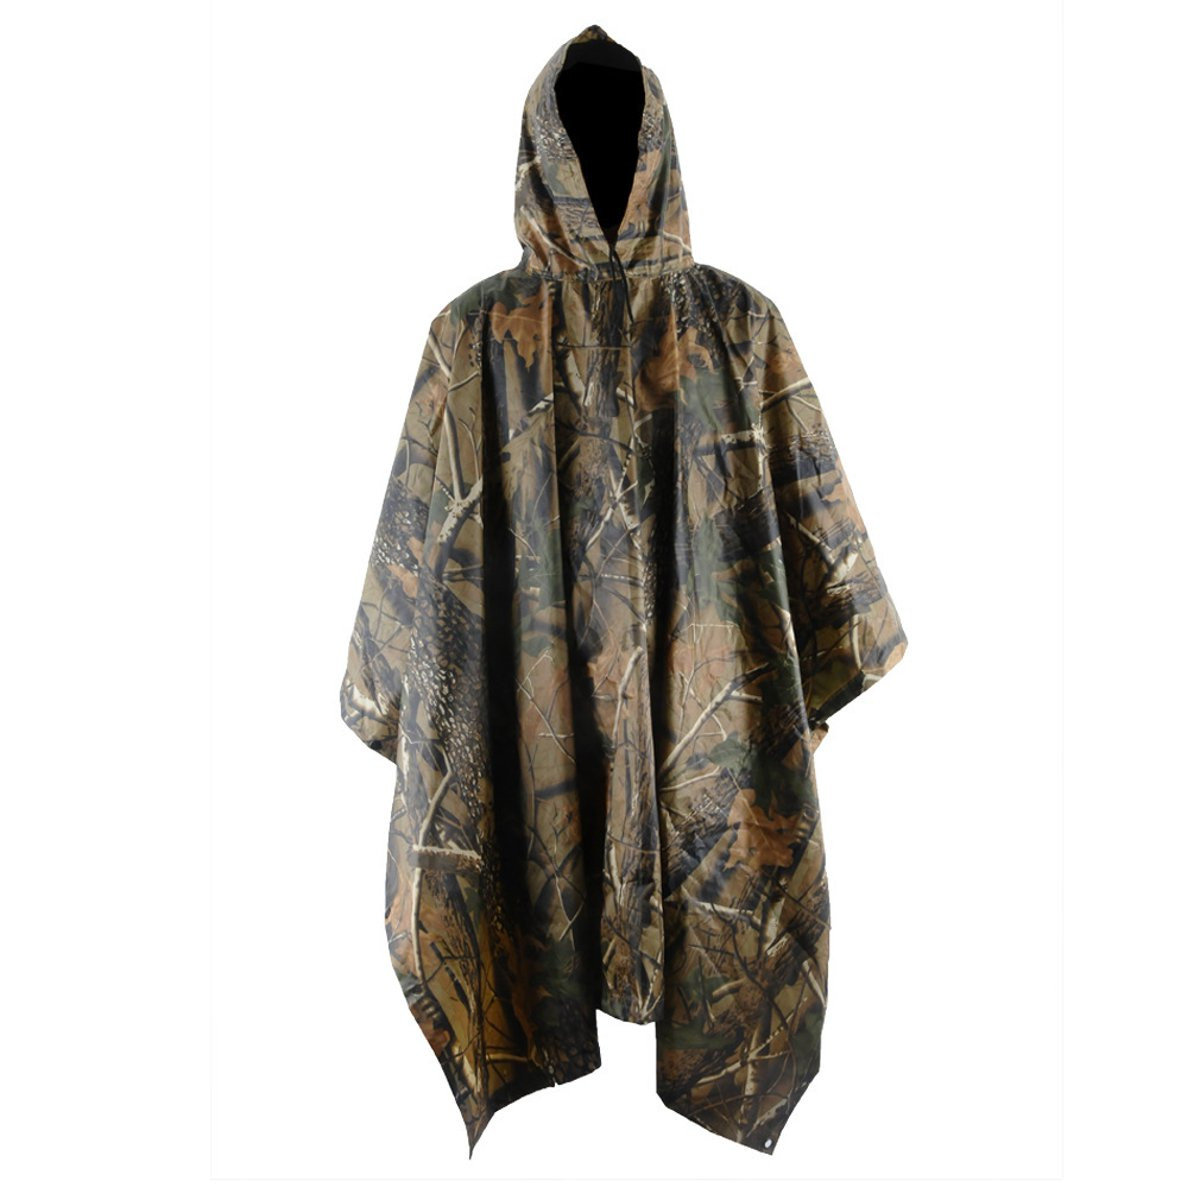 Camouflage-Regenmantel für Outdoor-Camping, wasserdichter Dschungel-Poncho für die Jagd.